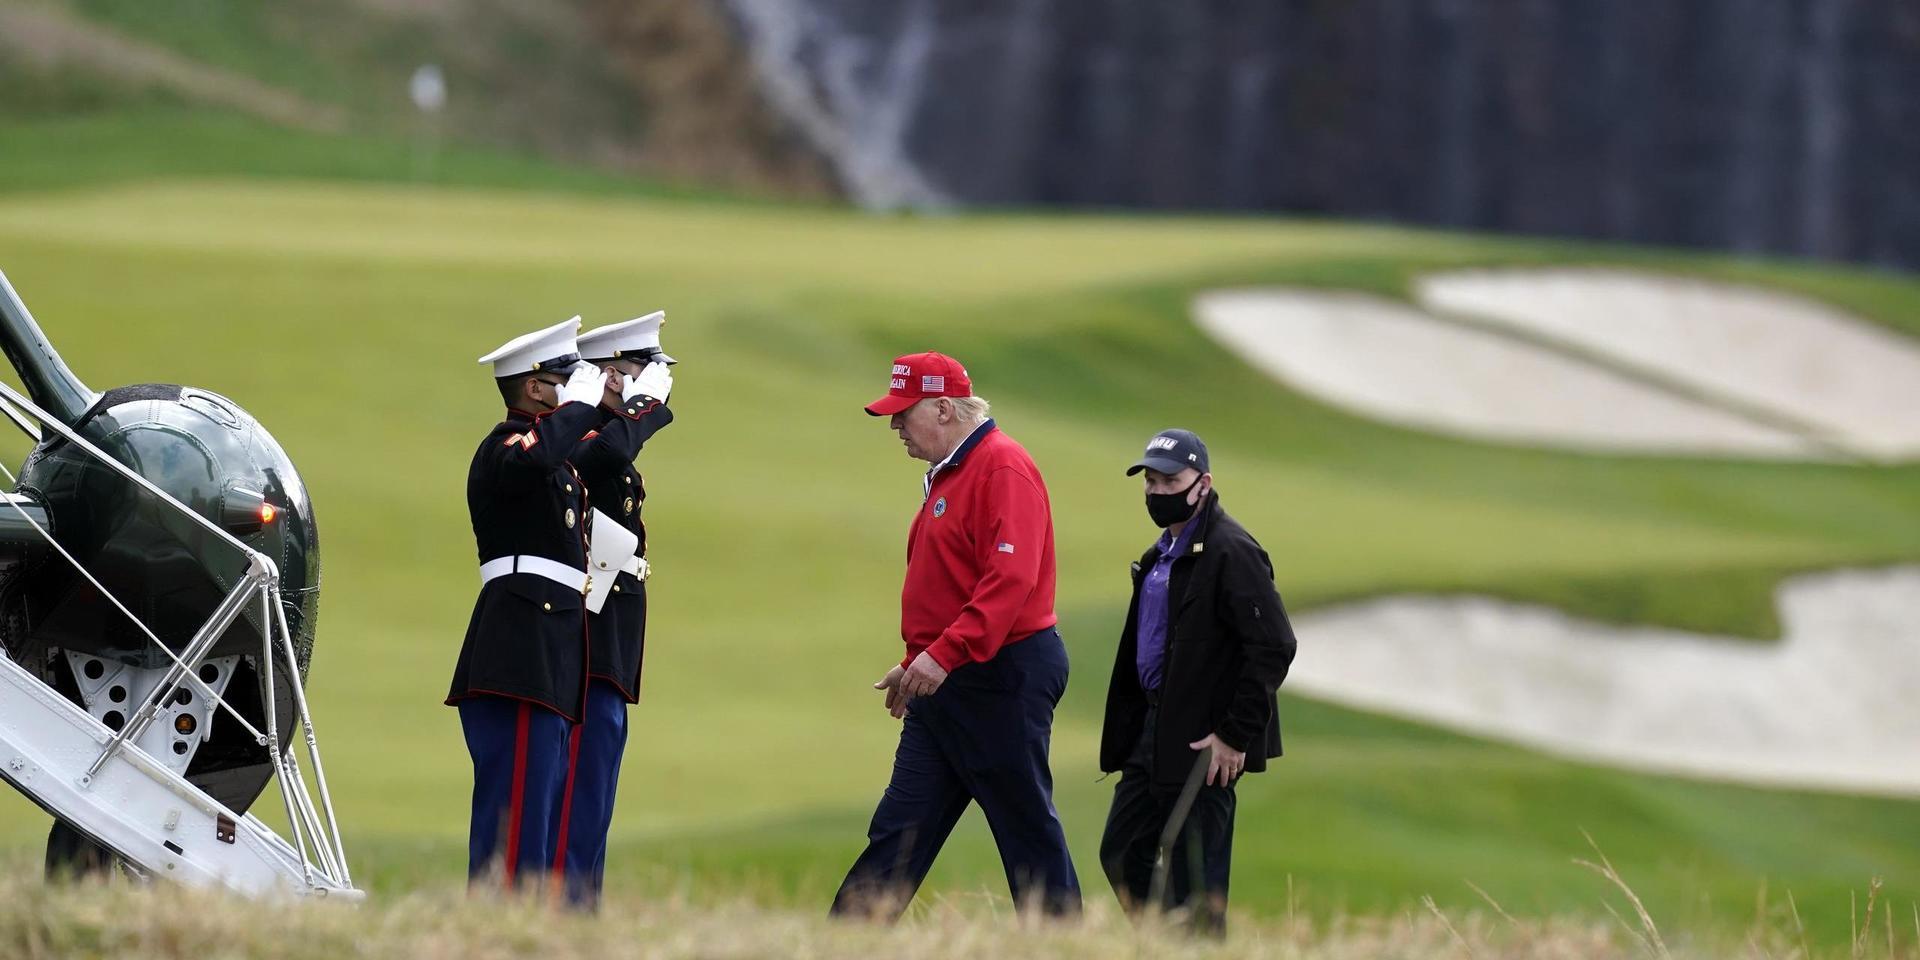 Under söndagen gjorde Donald Trump en telefonintervju med Fox News. Sedan valet den 3 november har presidenten gjort få offentliga framträdanden, och tillbringat mer tid på golfbanan.